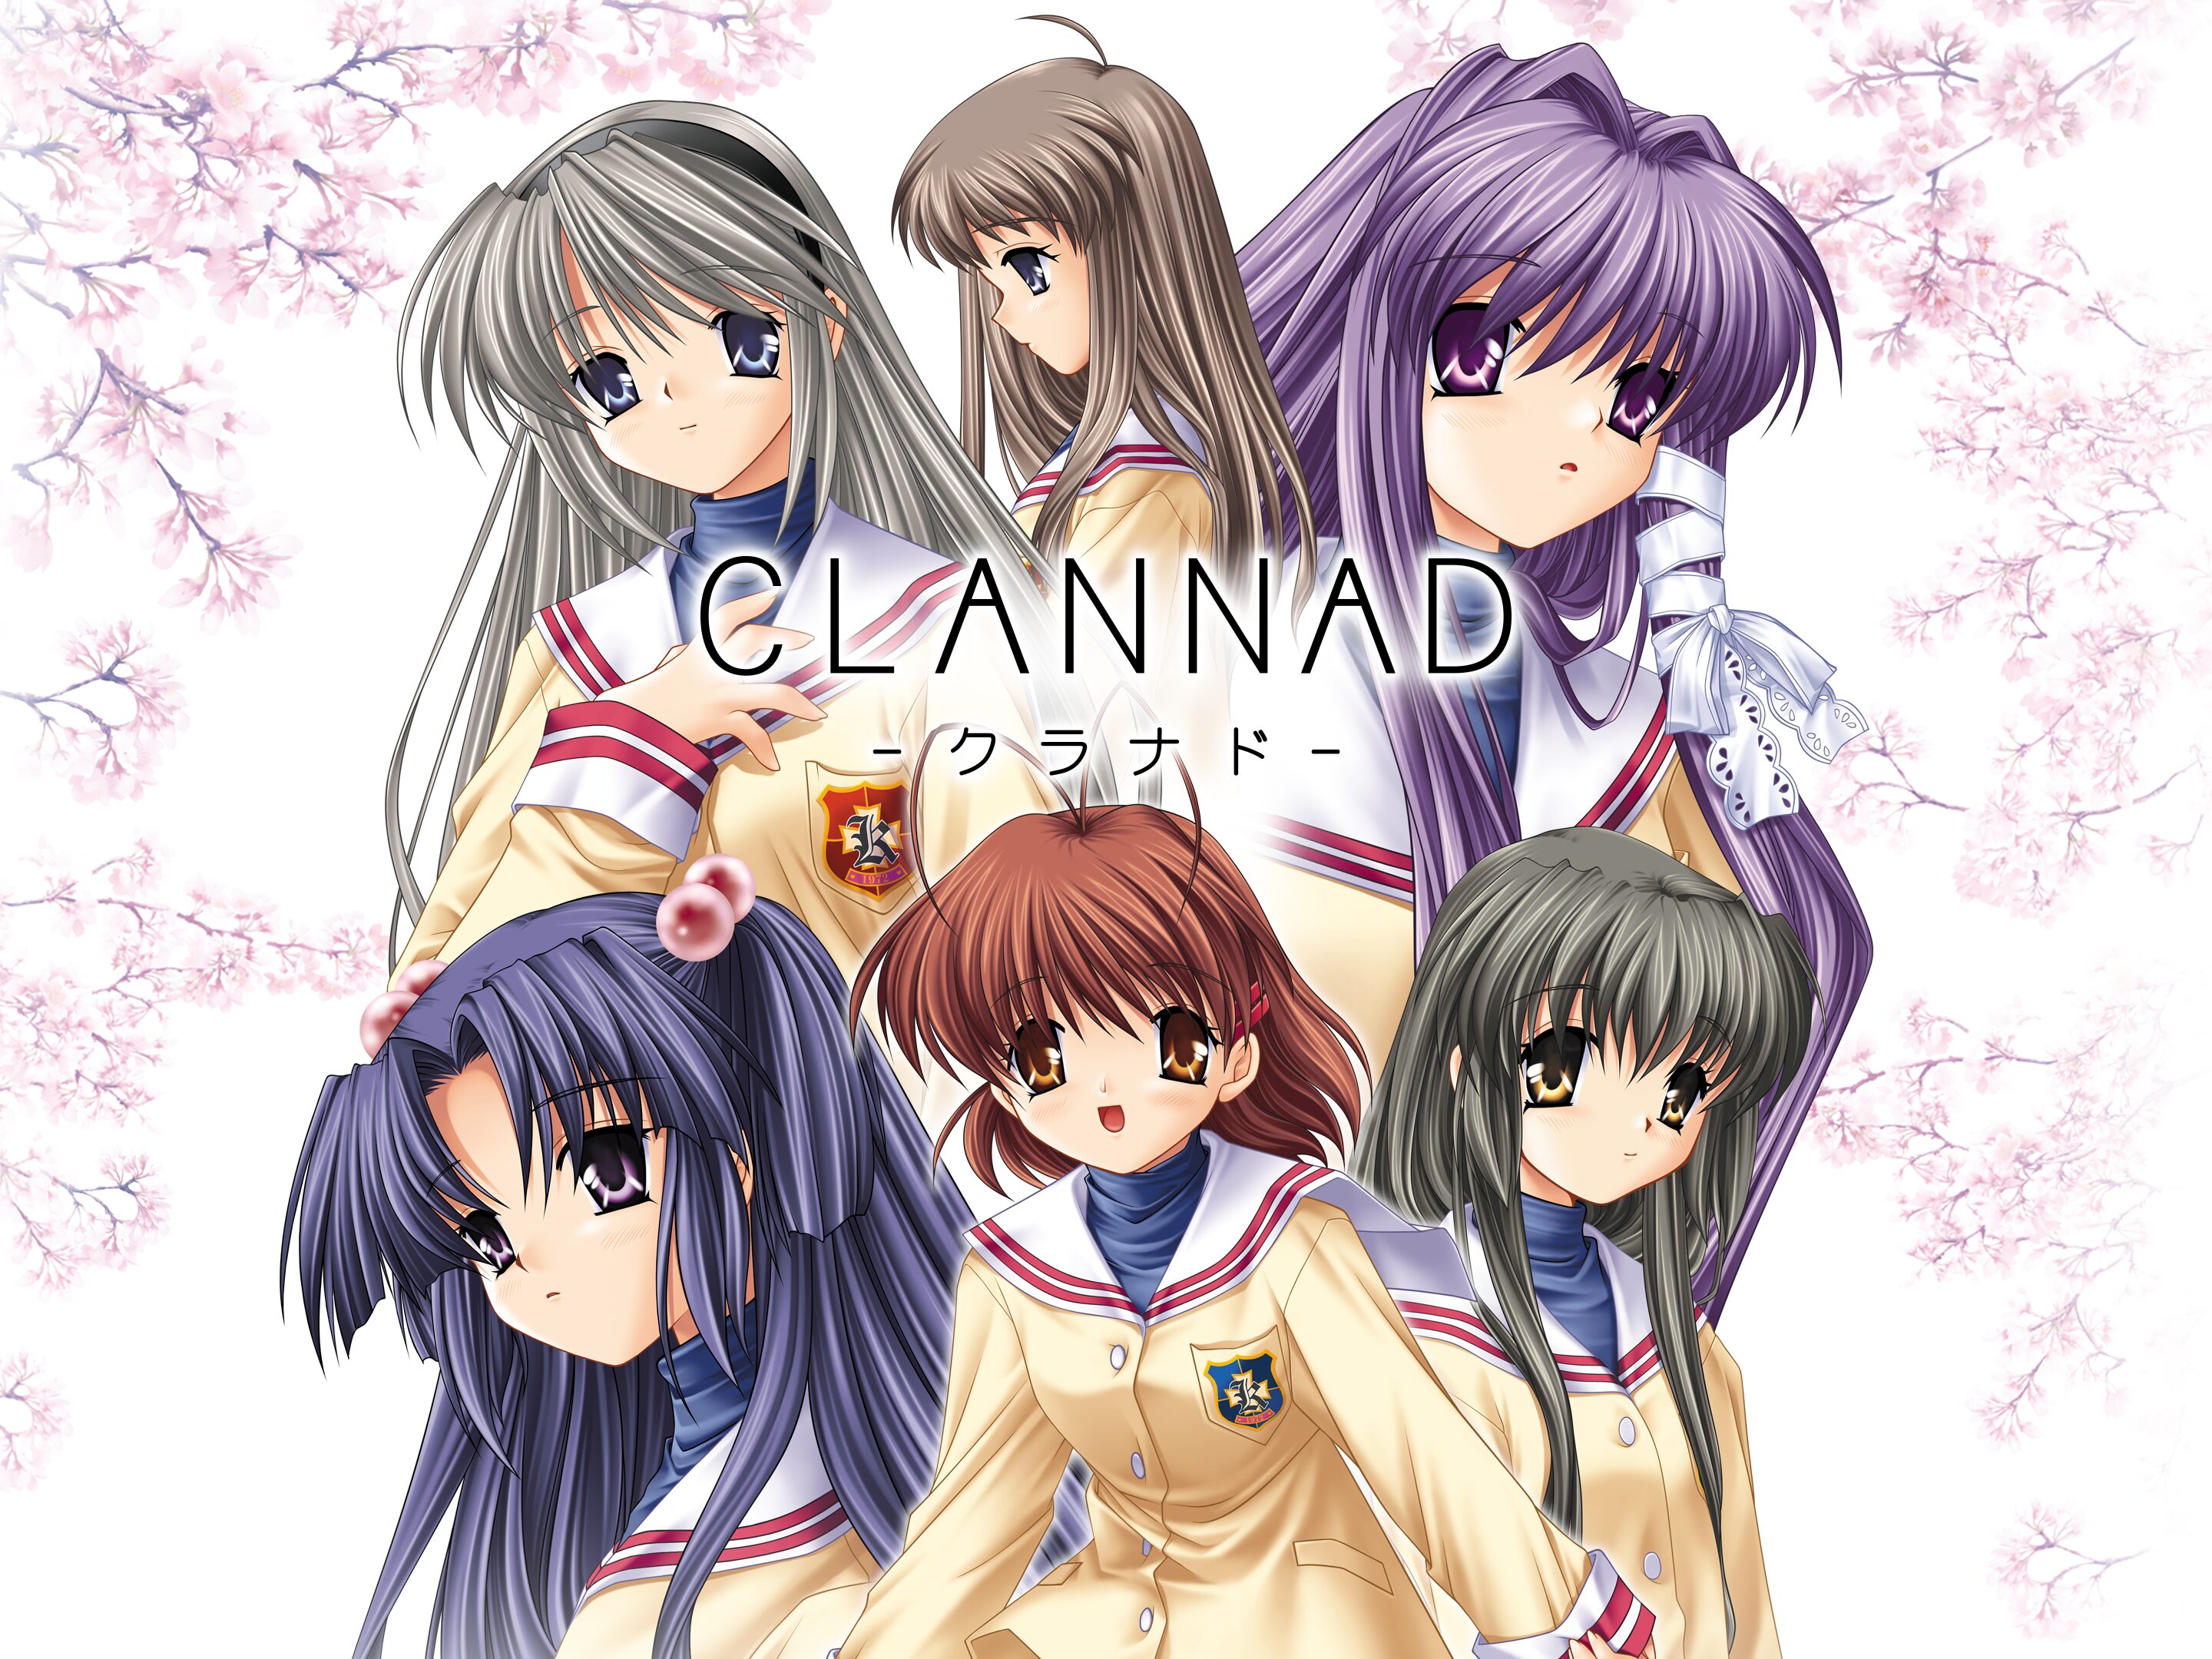 Clannad: Mitsumi Mamoru Sakamichi de - Joukan for PlayStation